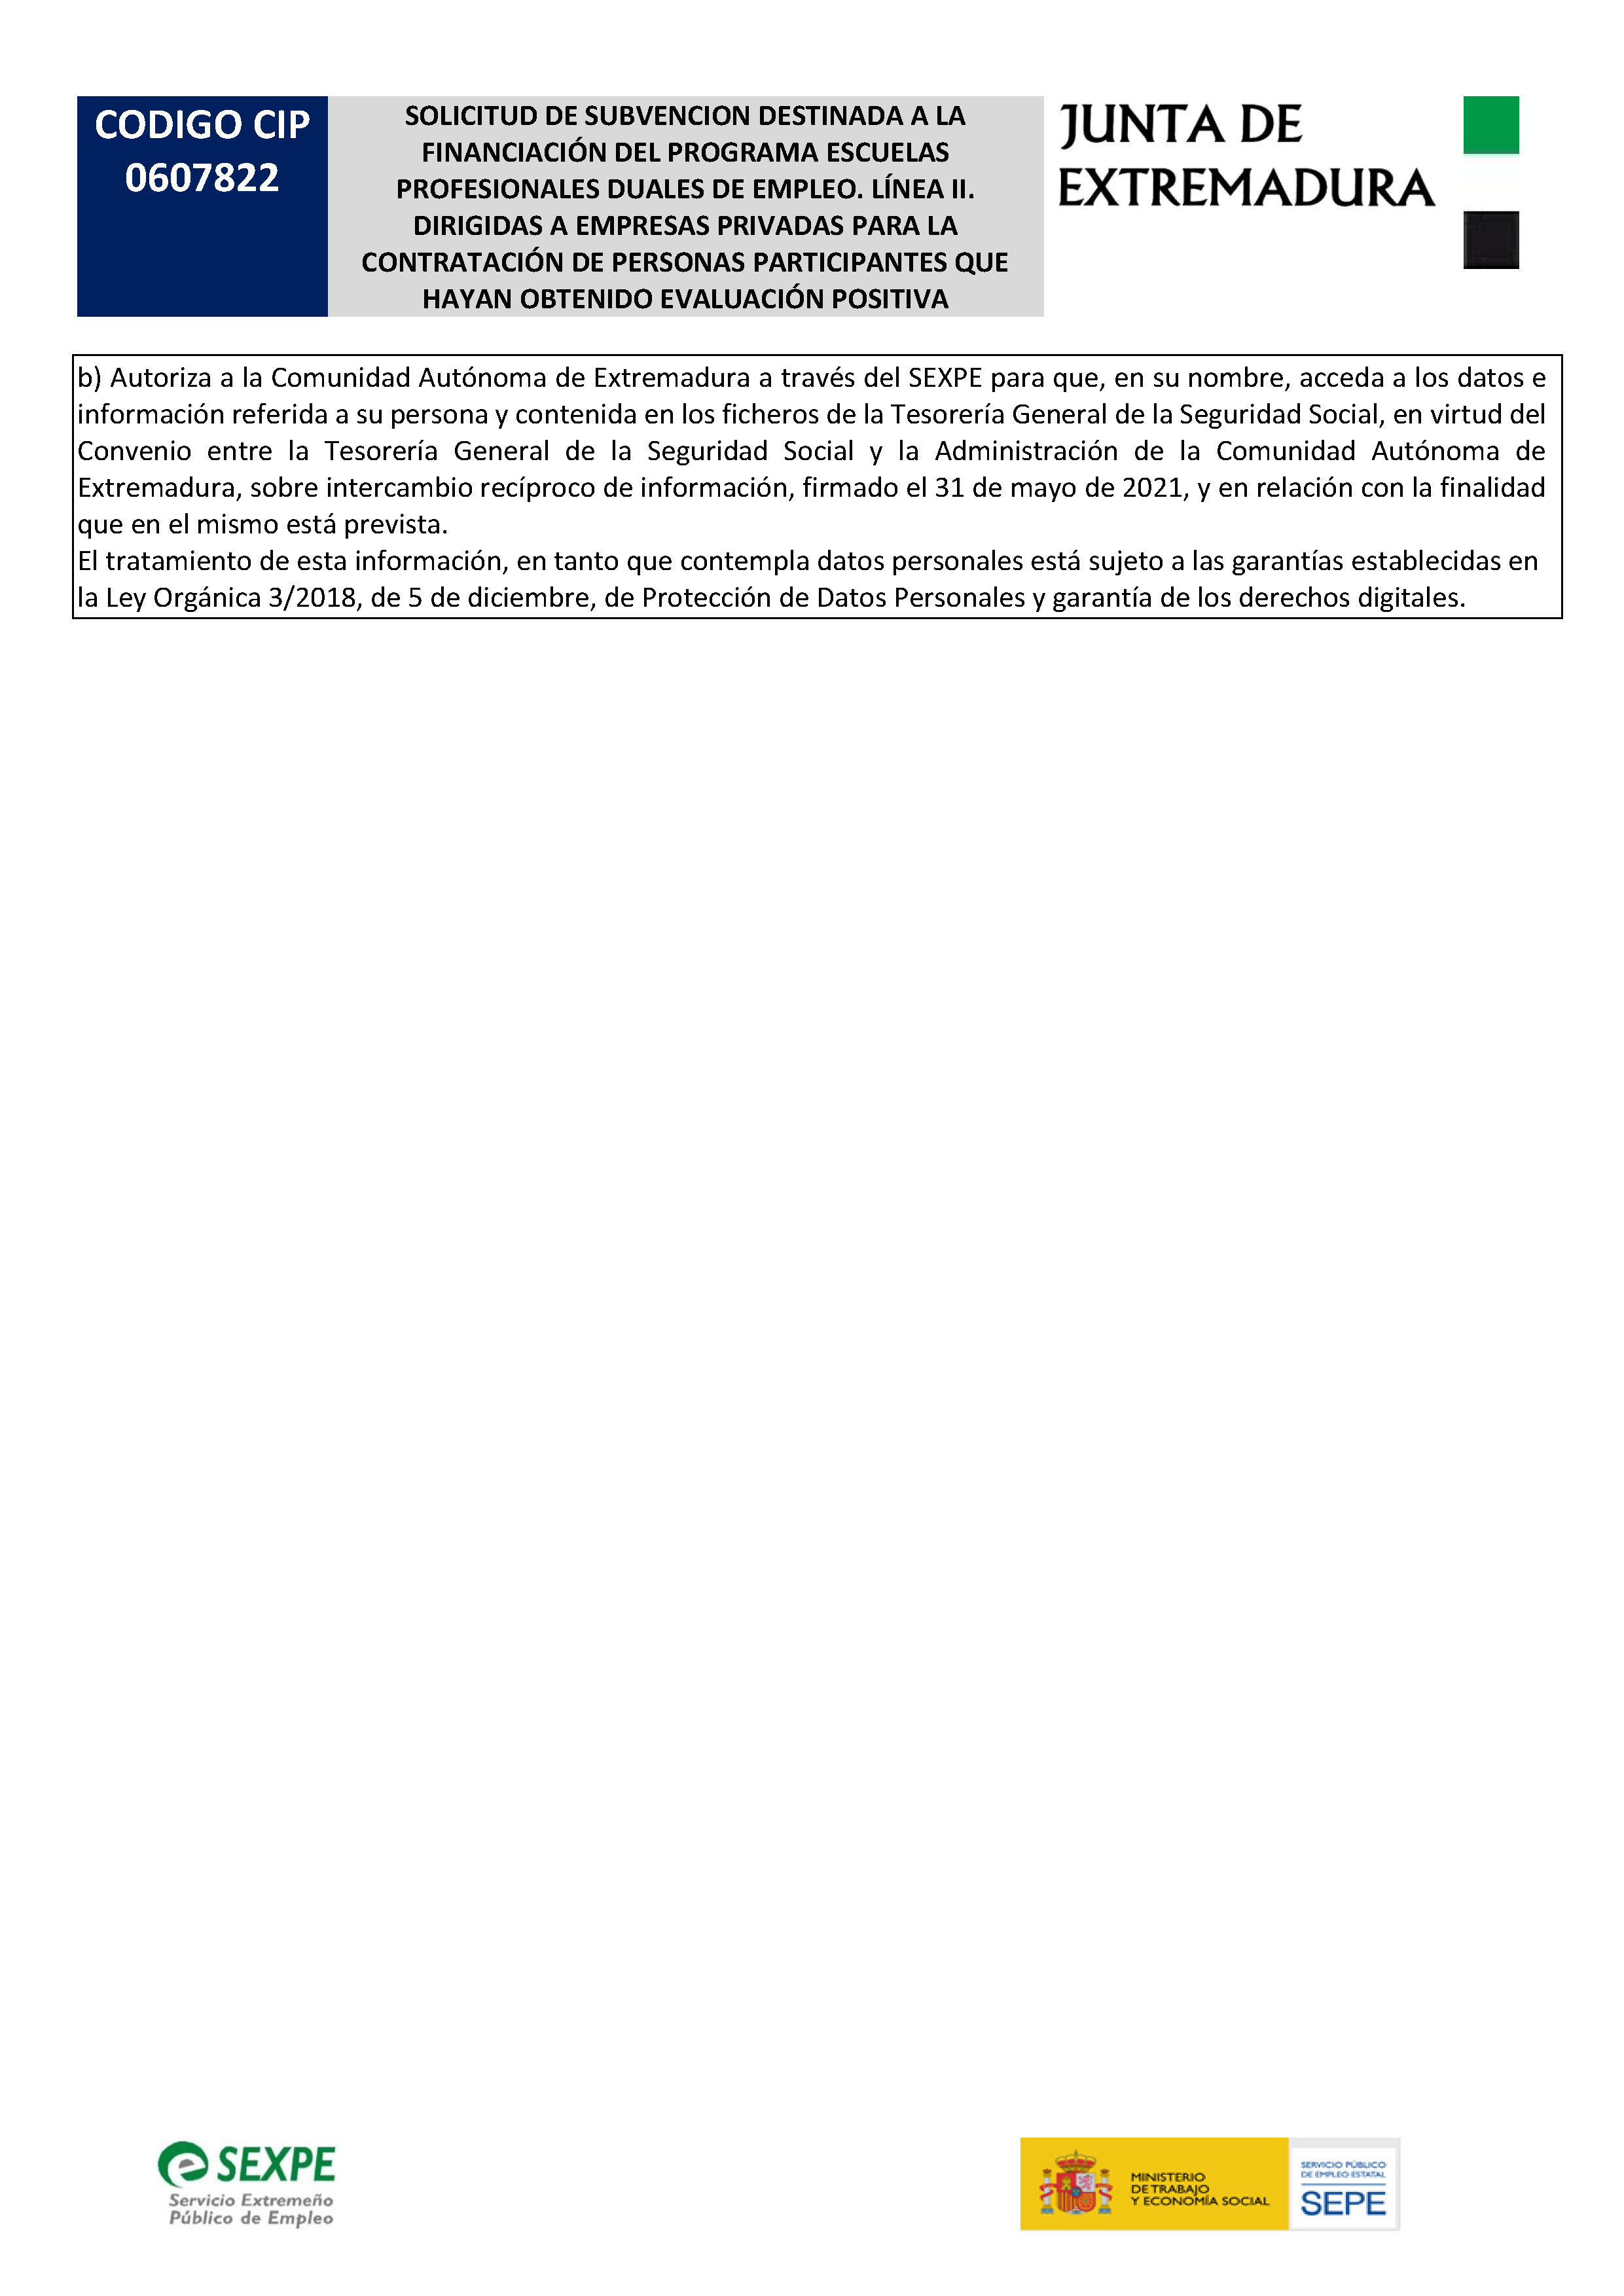 SOLICITUD DE SUBVENCIÃ“N DESTINADA A LA FINANCIACIÃ“N DEL PROGRAMA ESCUELAS PROFESIONALES DUALES DE EMPLEO. LÃ�NEA II Pag 4